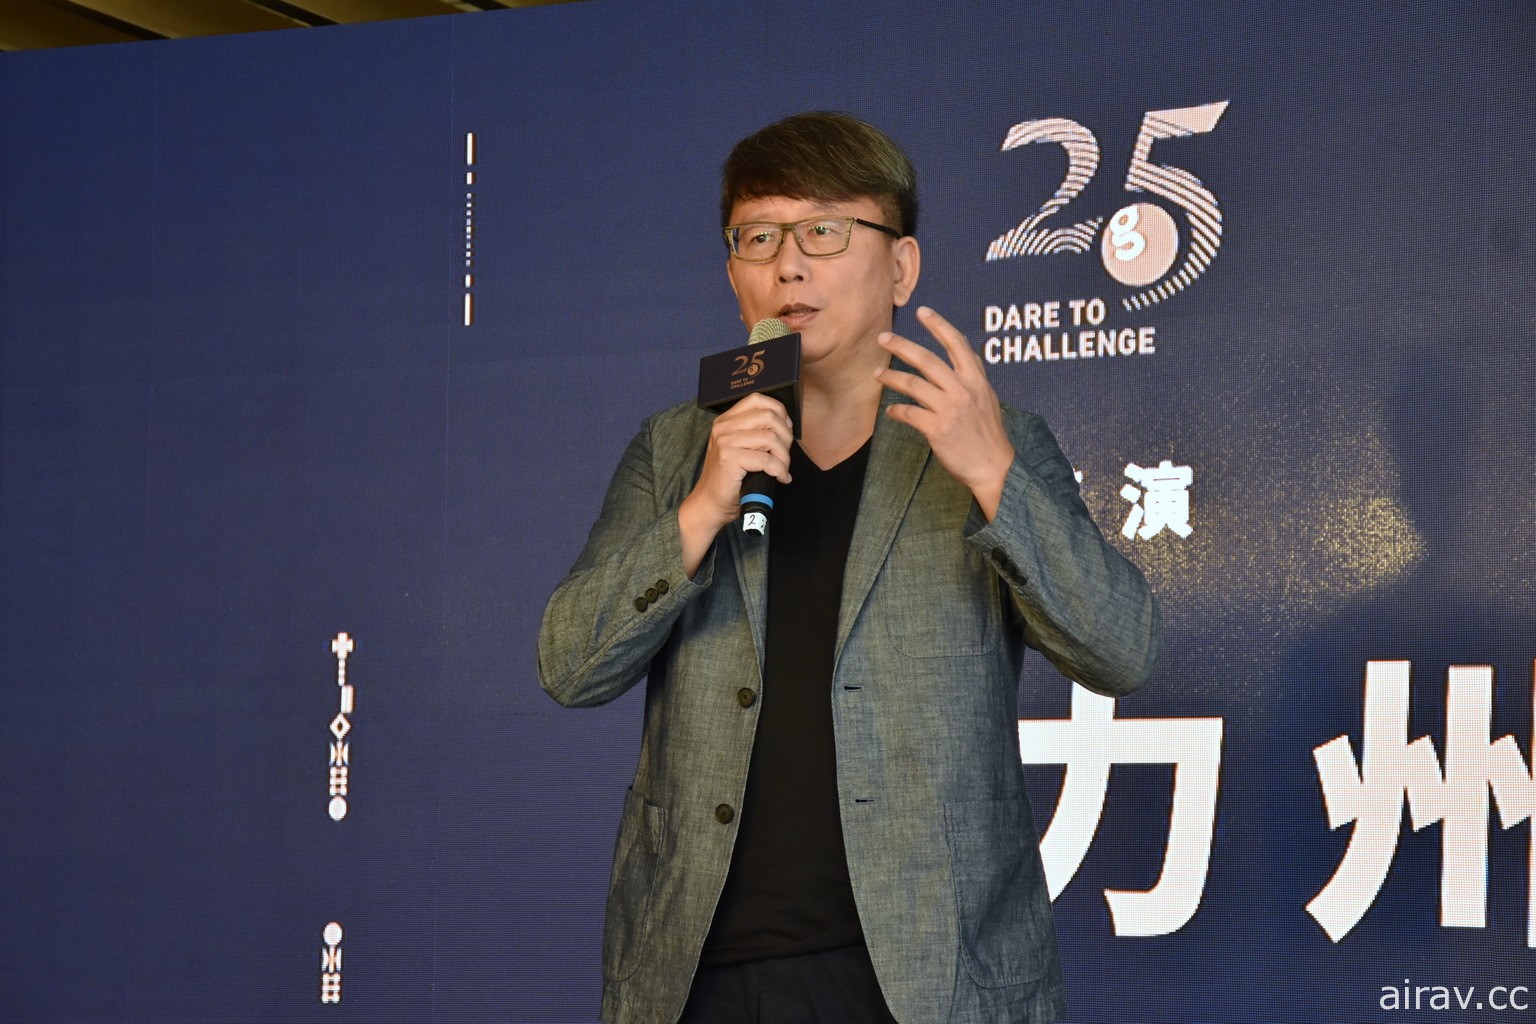 橘子集團慶祝 25 周年釋出楊力州執導影片 劉柏園期許不要怕卡關、持續努力有機會破關